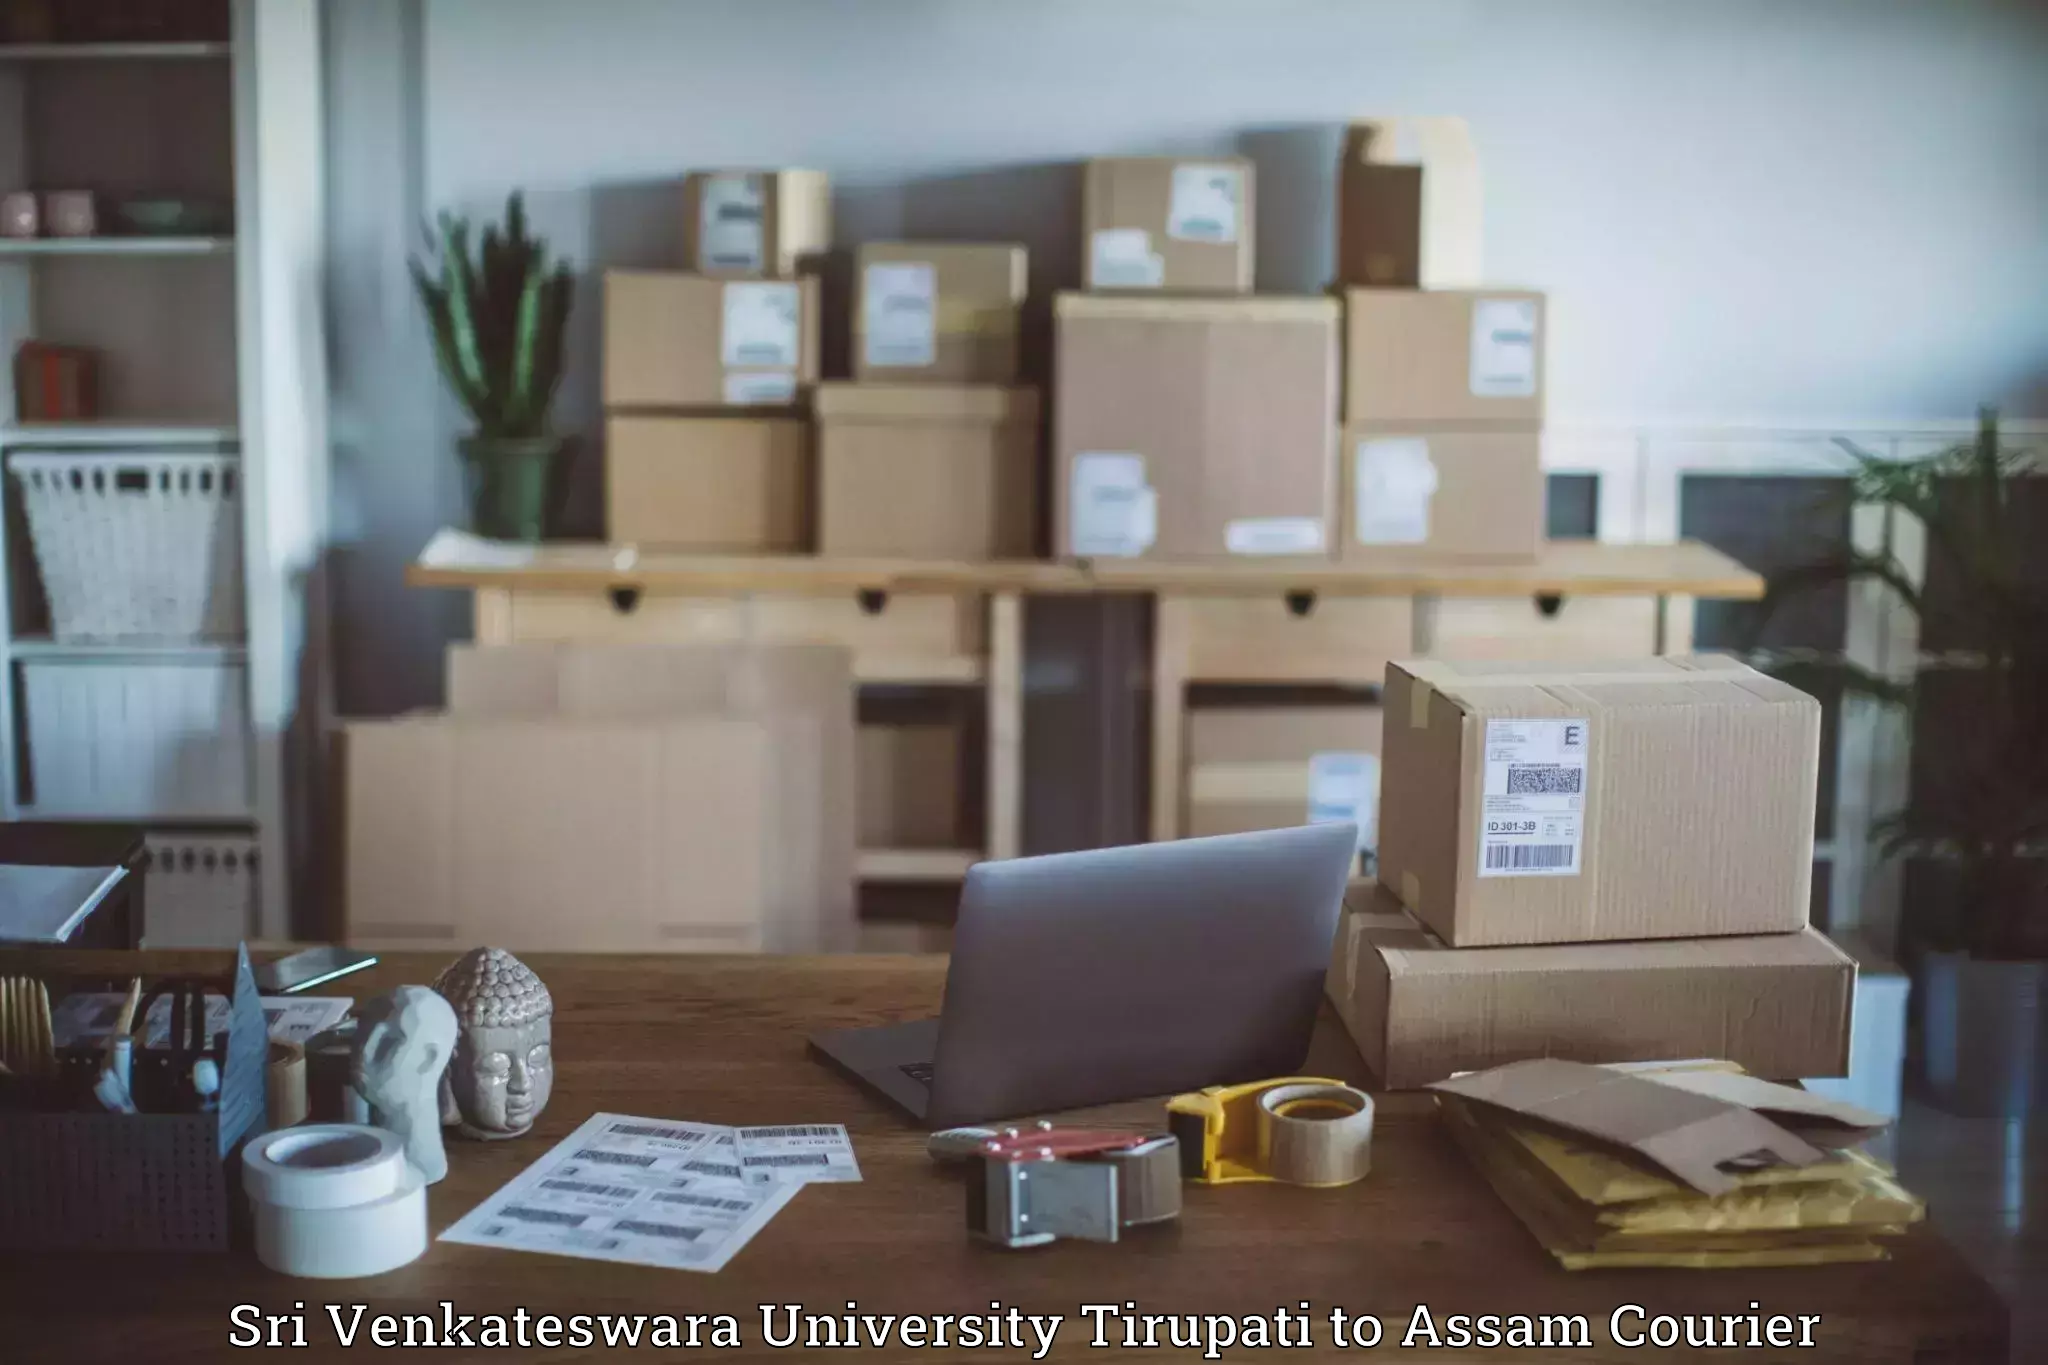 Reliable parcel services Sri Venkateswara University Tirupati to Fekamari